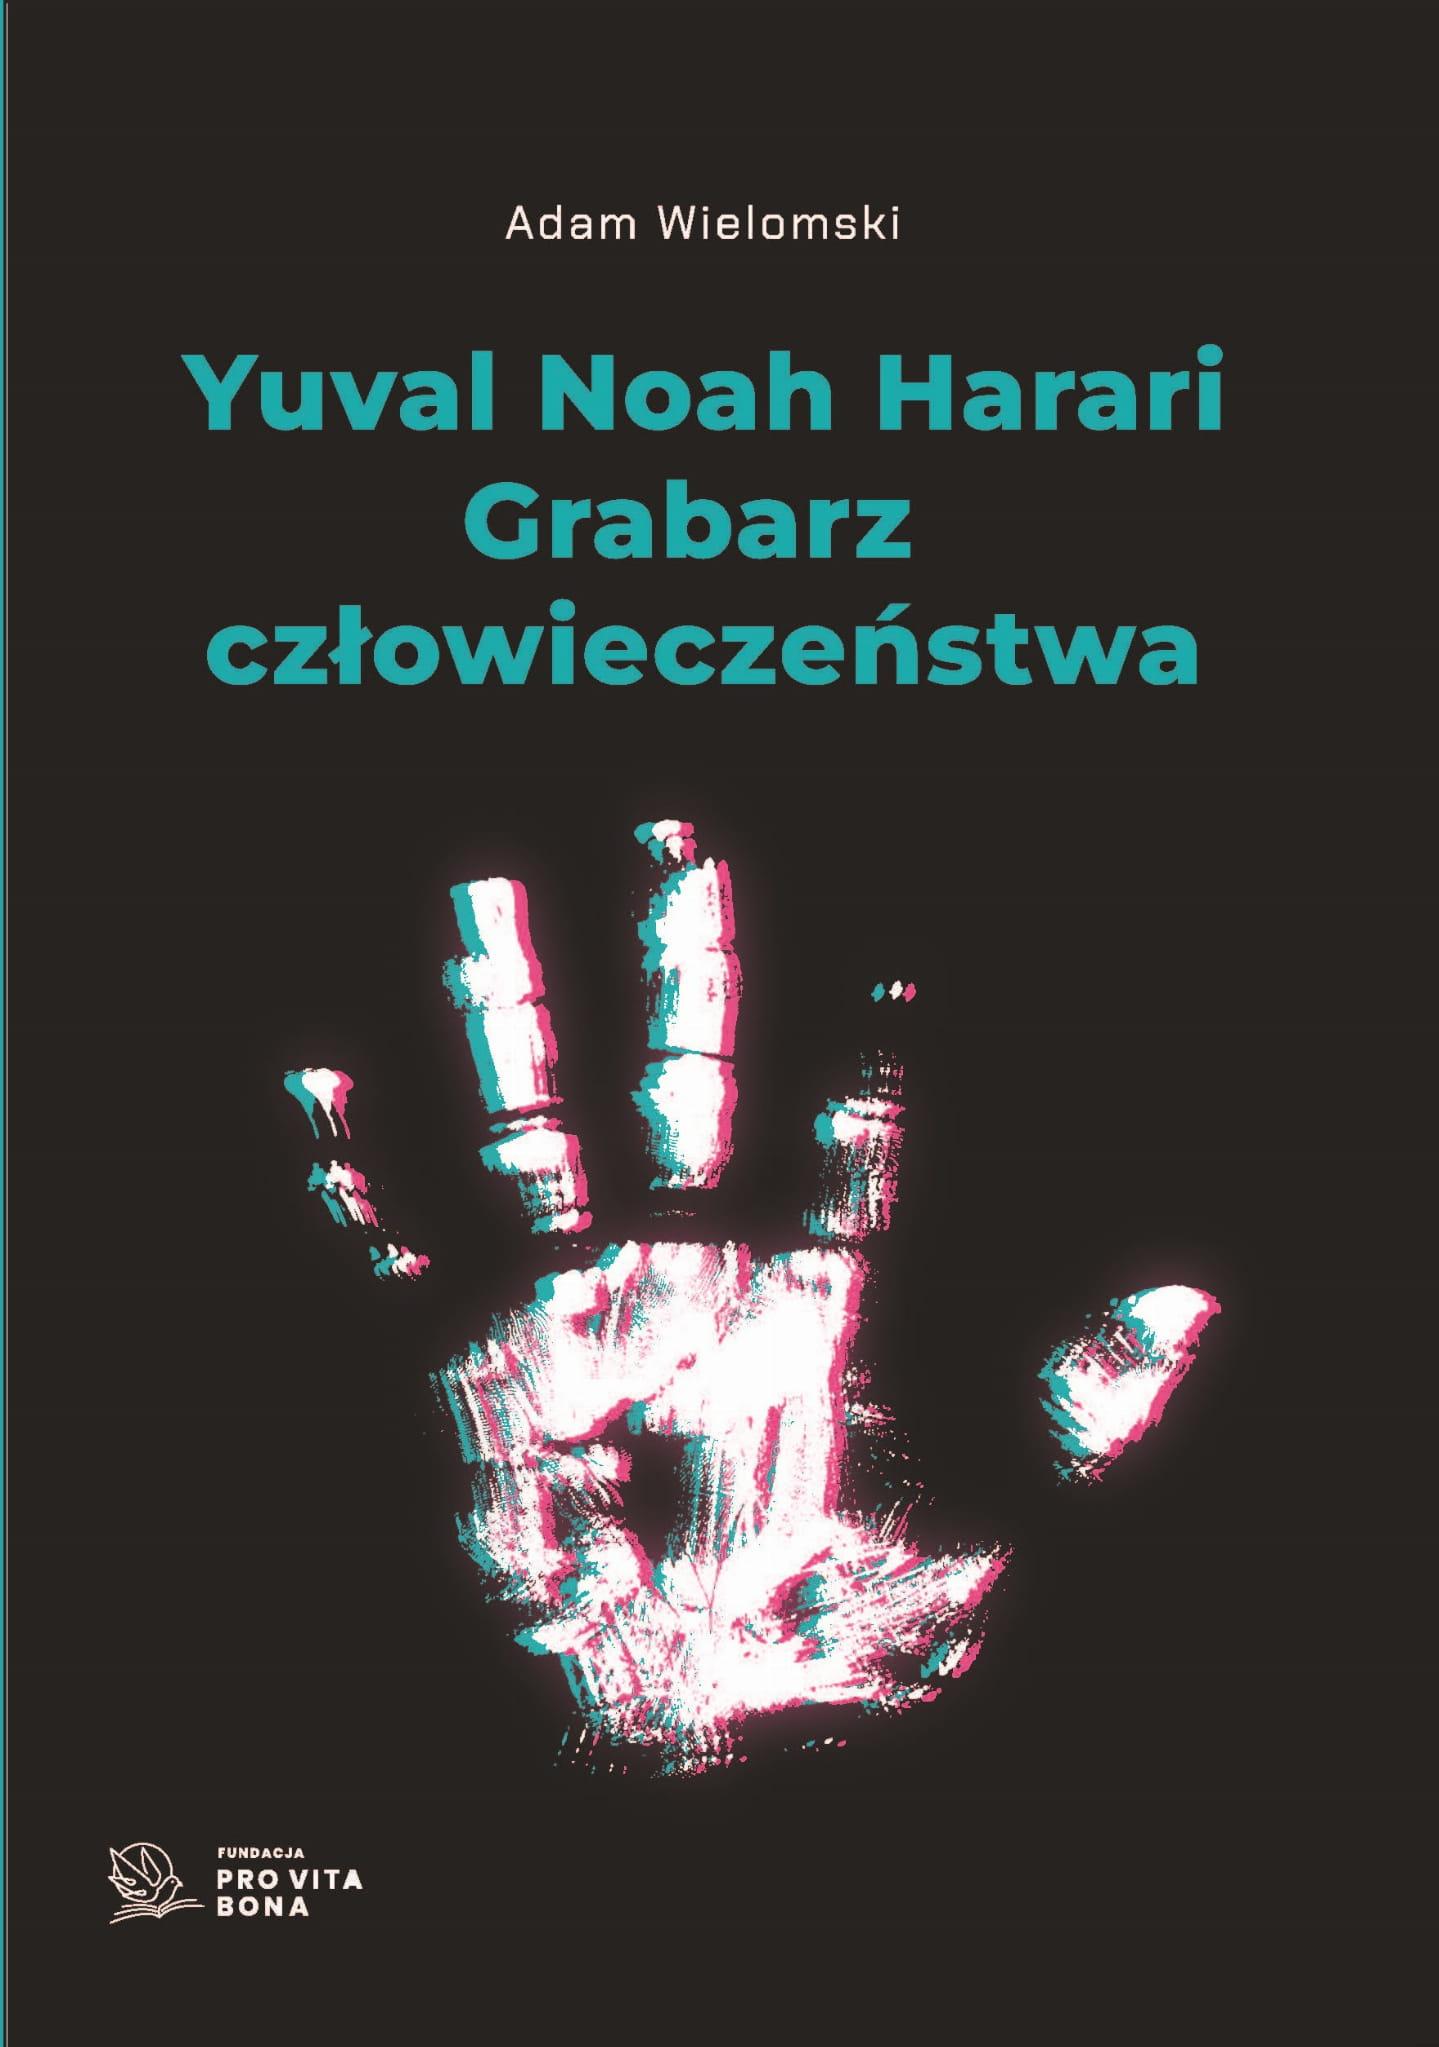 Yuval Noah Harari Grabarz człowieczeństwa (A.Wielomski)